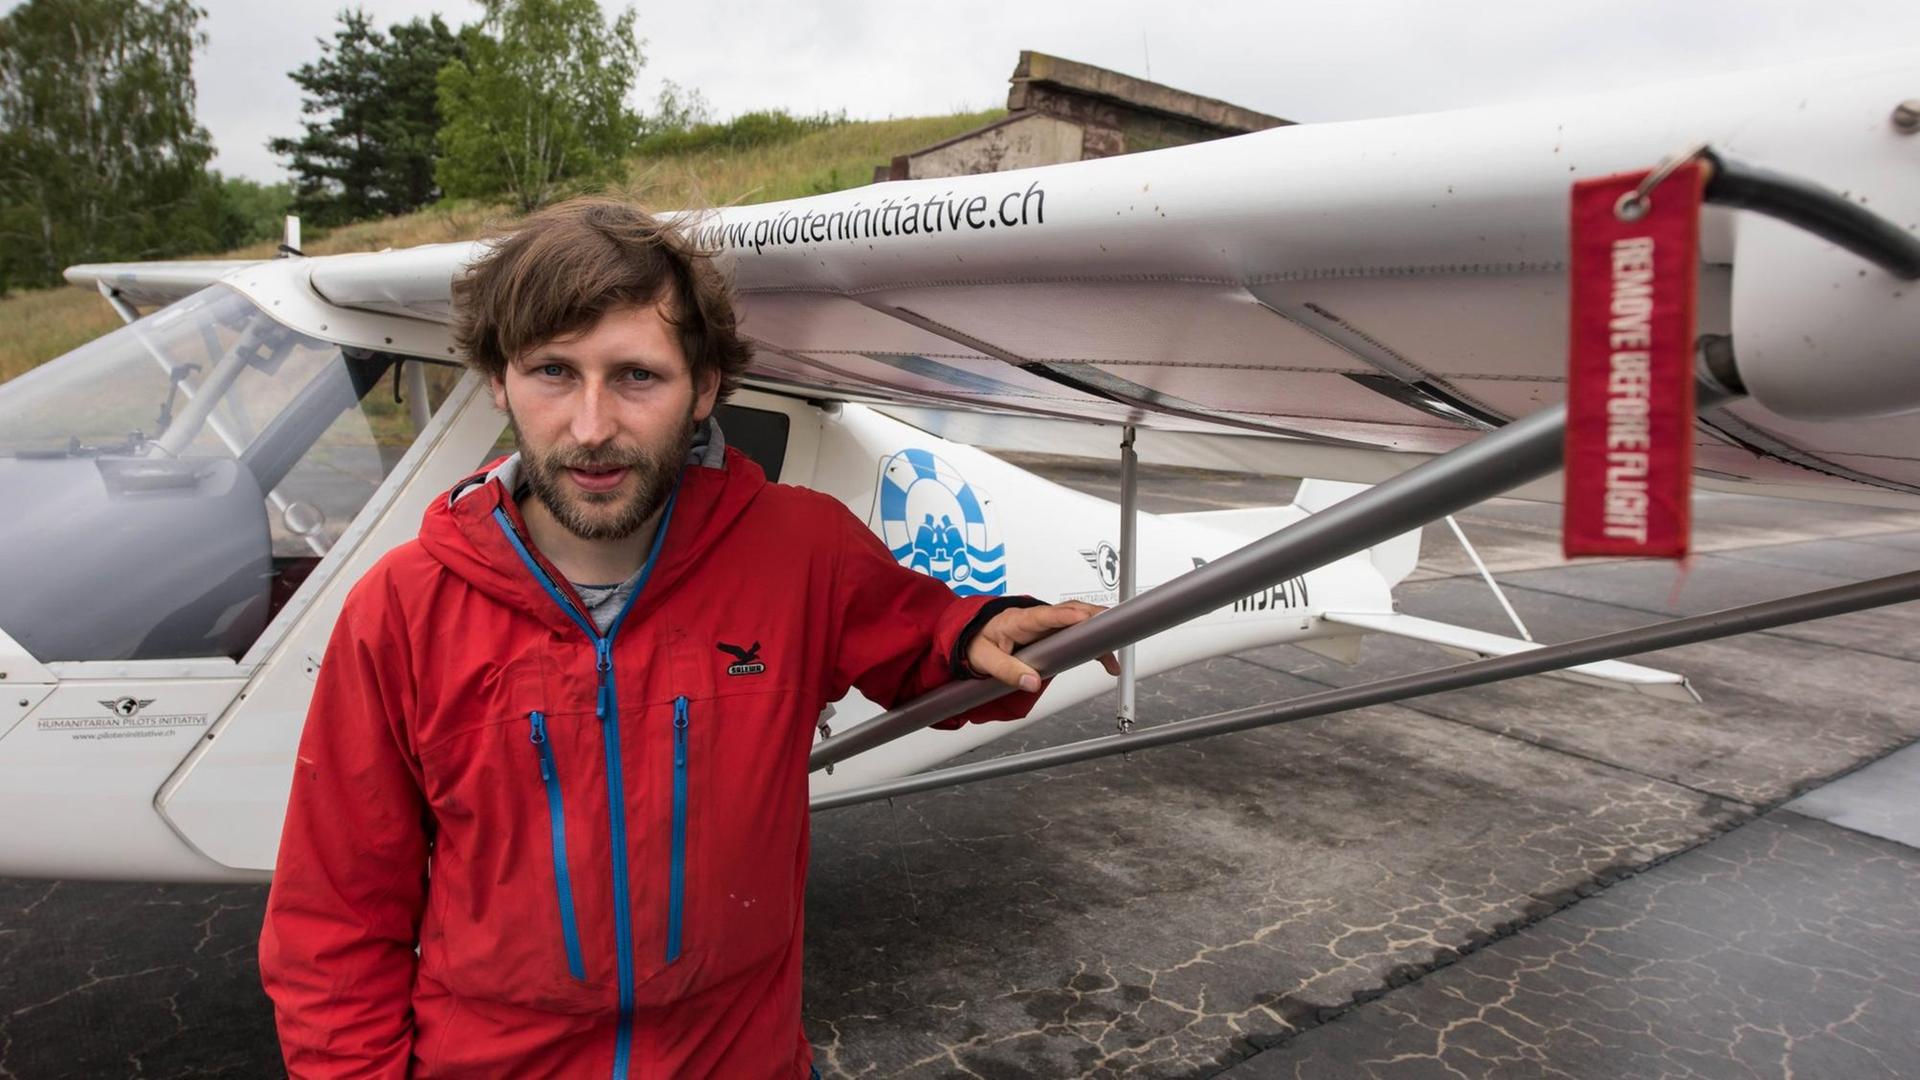 Der Pilot Ruben Neugebauer steht in roter Jacke vor einem Ultraleichtflugzeug.